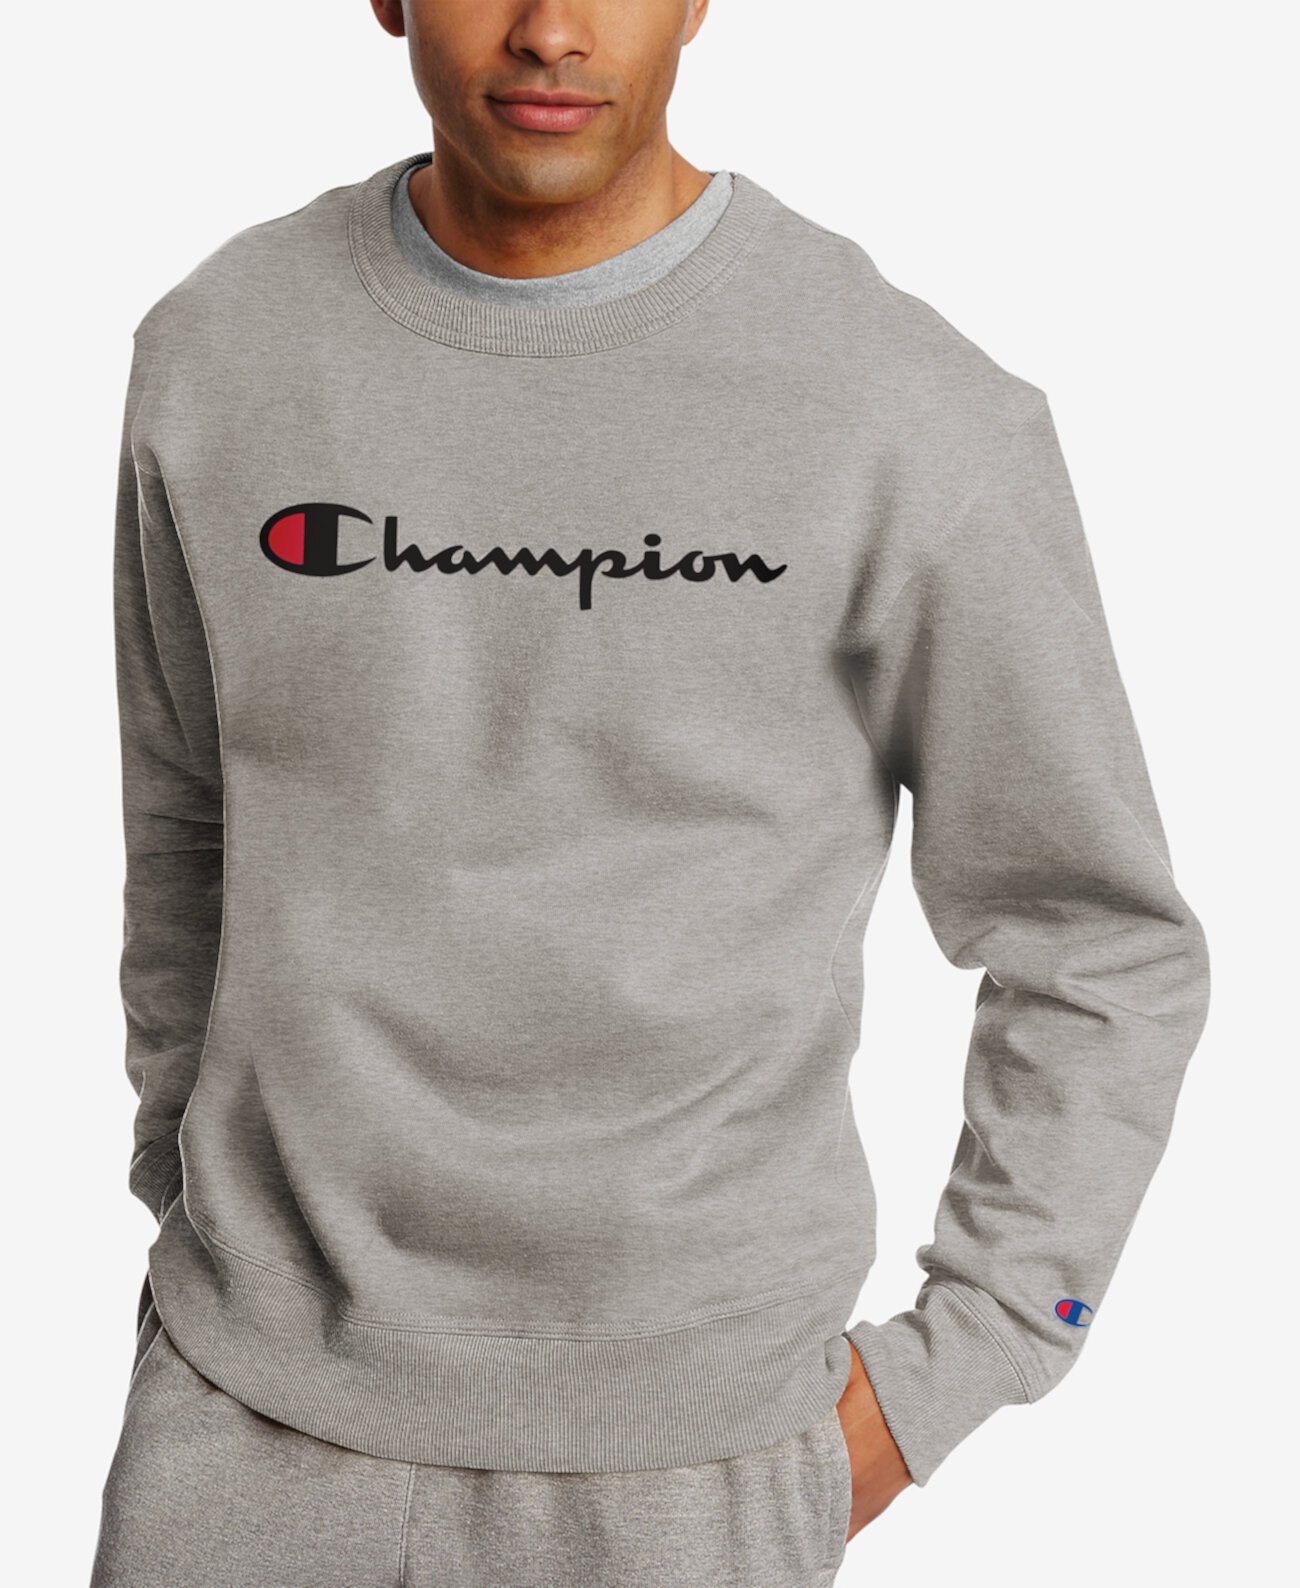 Мужская толстовка Powerblend из флиса с логотипом Champion